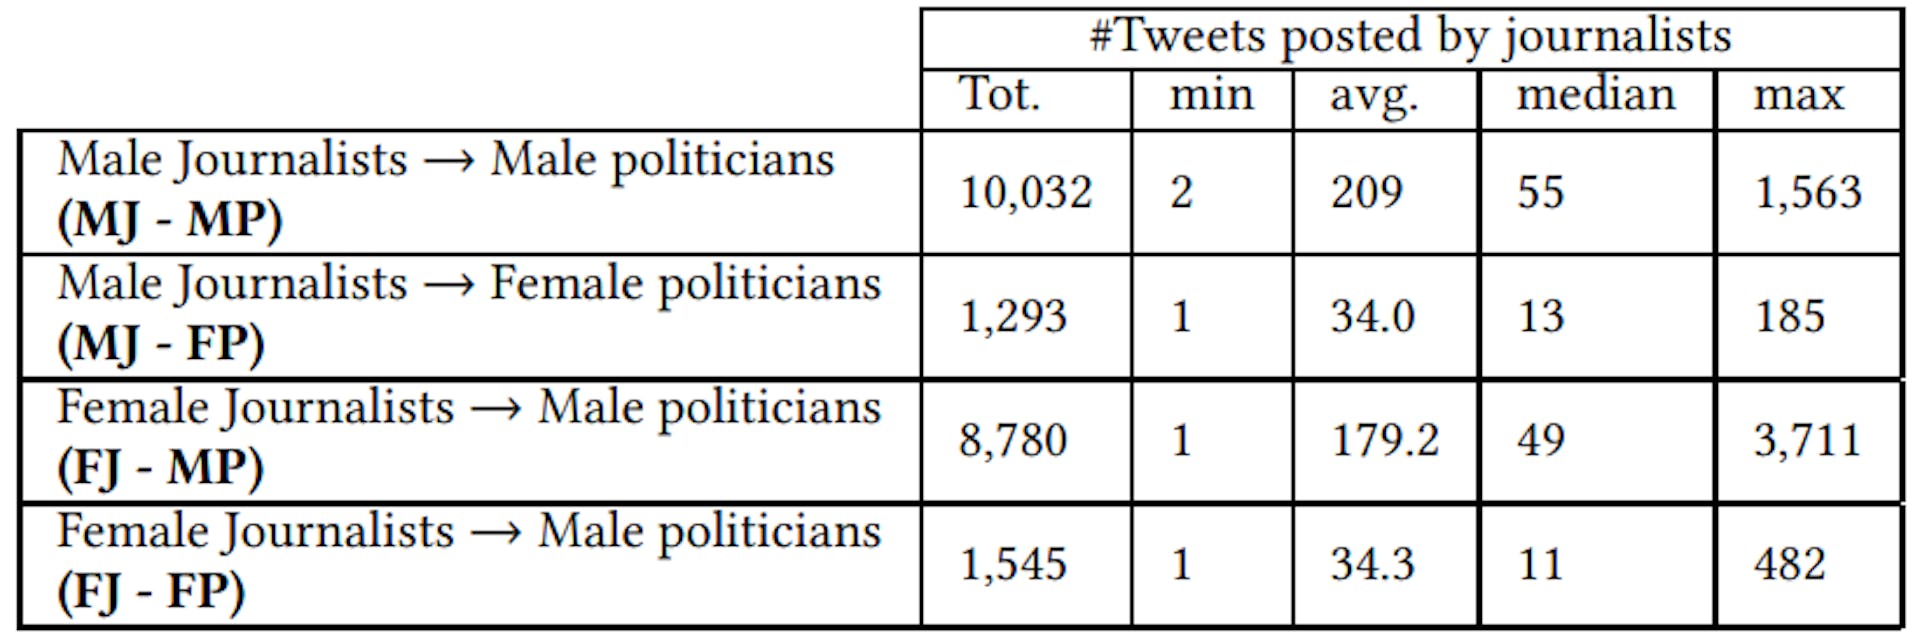 Tabela 1: Número de tweets postados por jornalistas indianos mencionando políticos. As mulheres políticas receberam tweets relativamente menos mencionados.